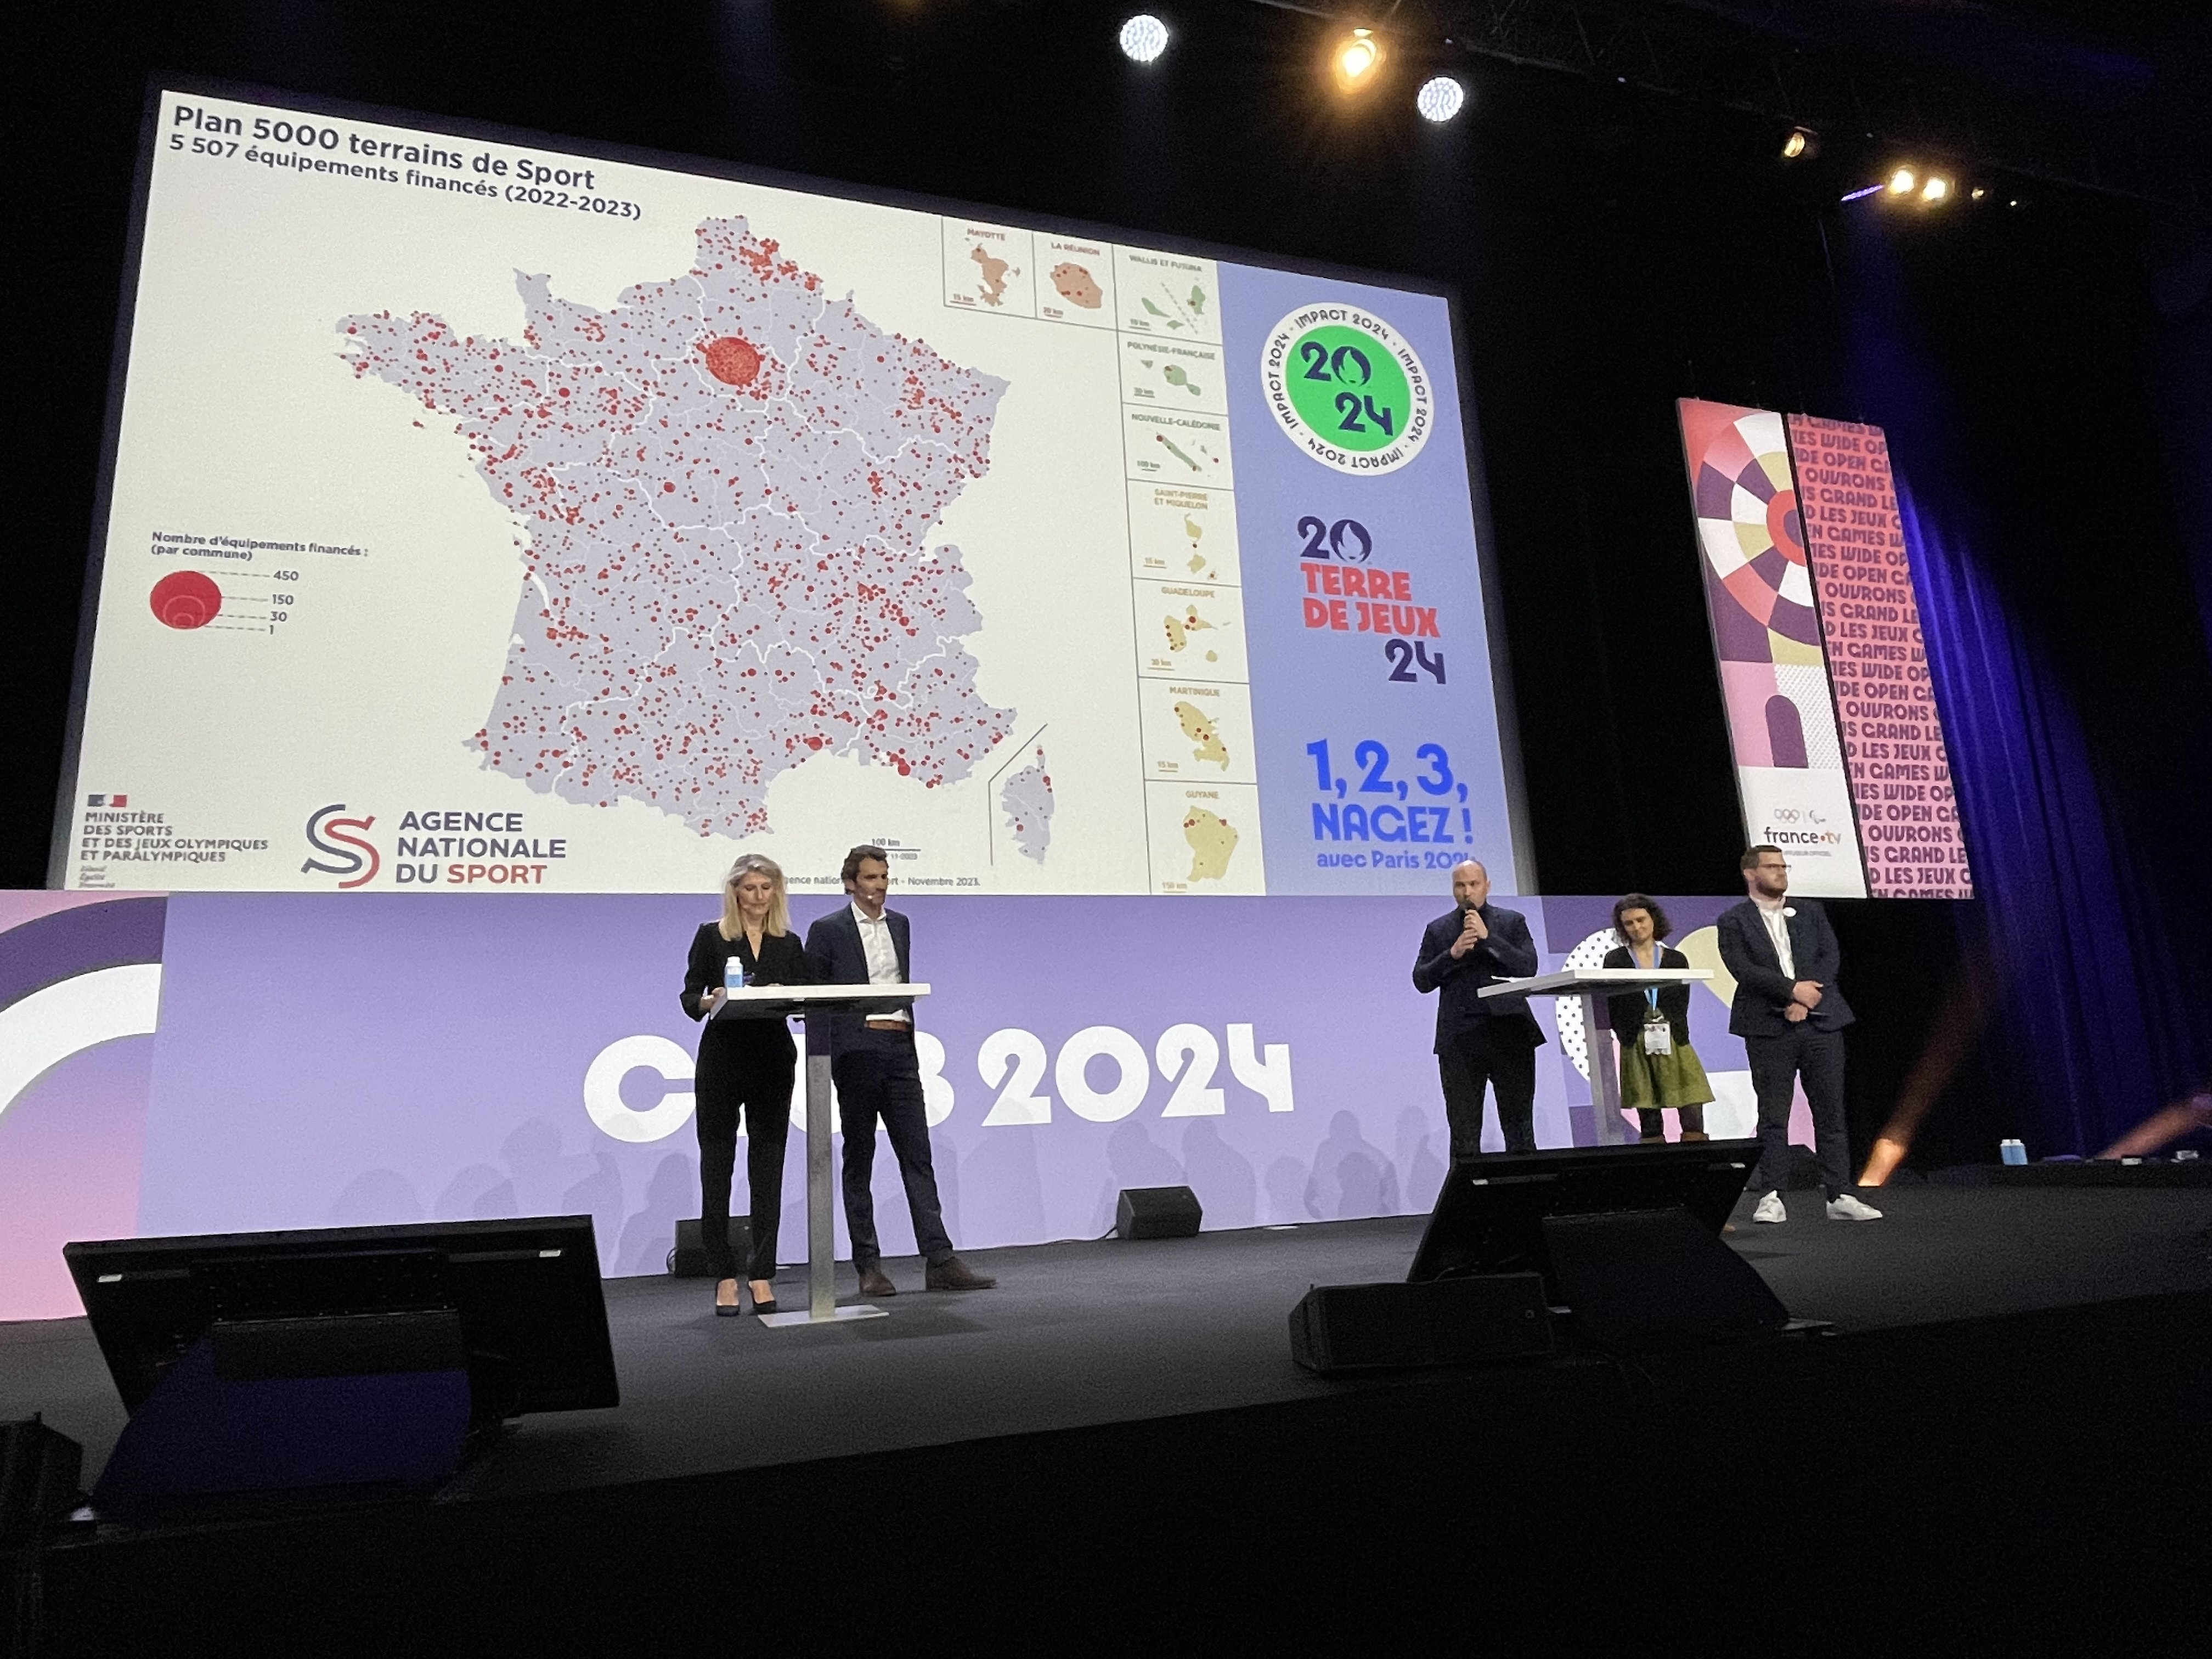 Forum Paris 2024